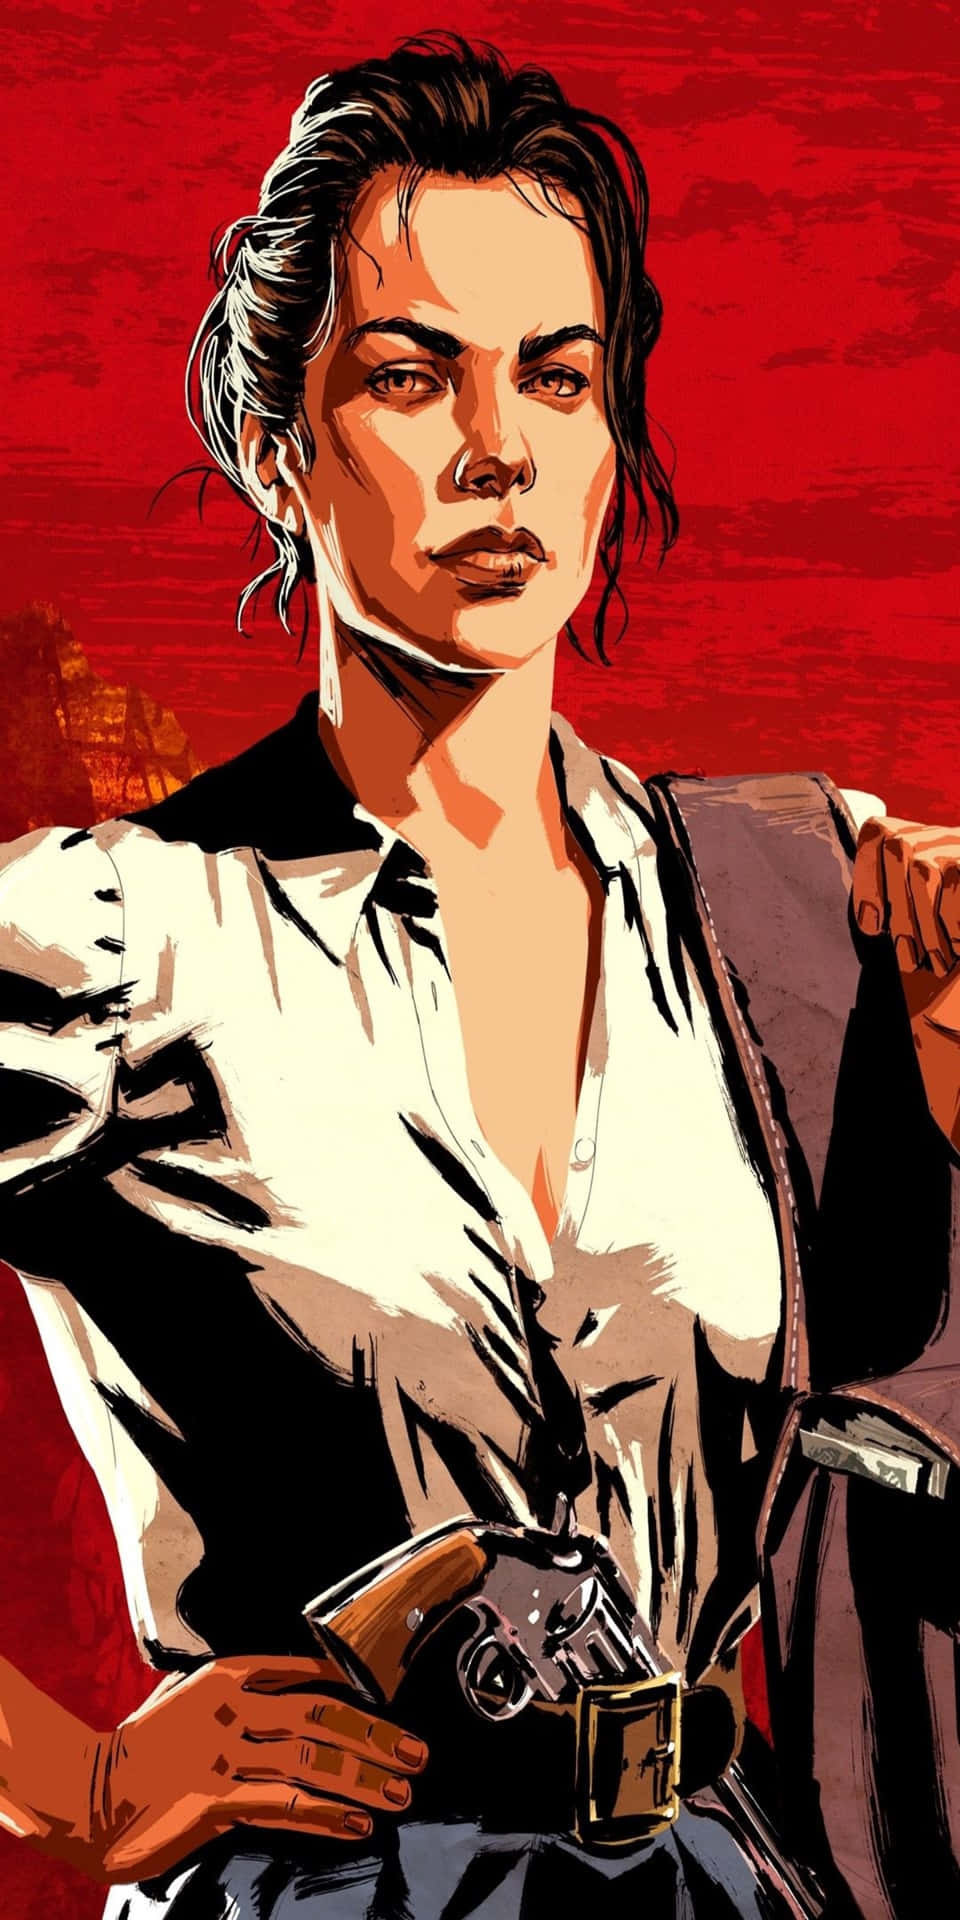 Pixel3-röd Bakgrundsbild För Red Dead Redemption 2 - Rött Affischmotiv Av Abigail Marston.